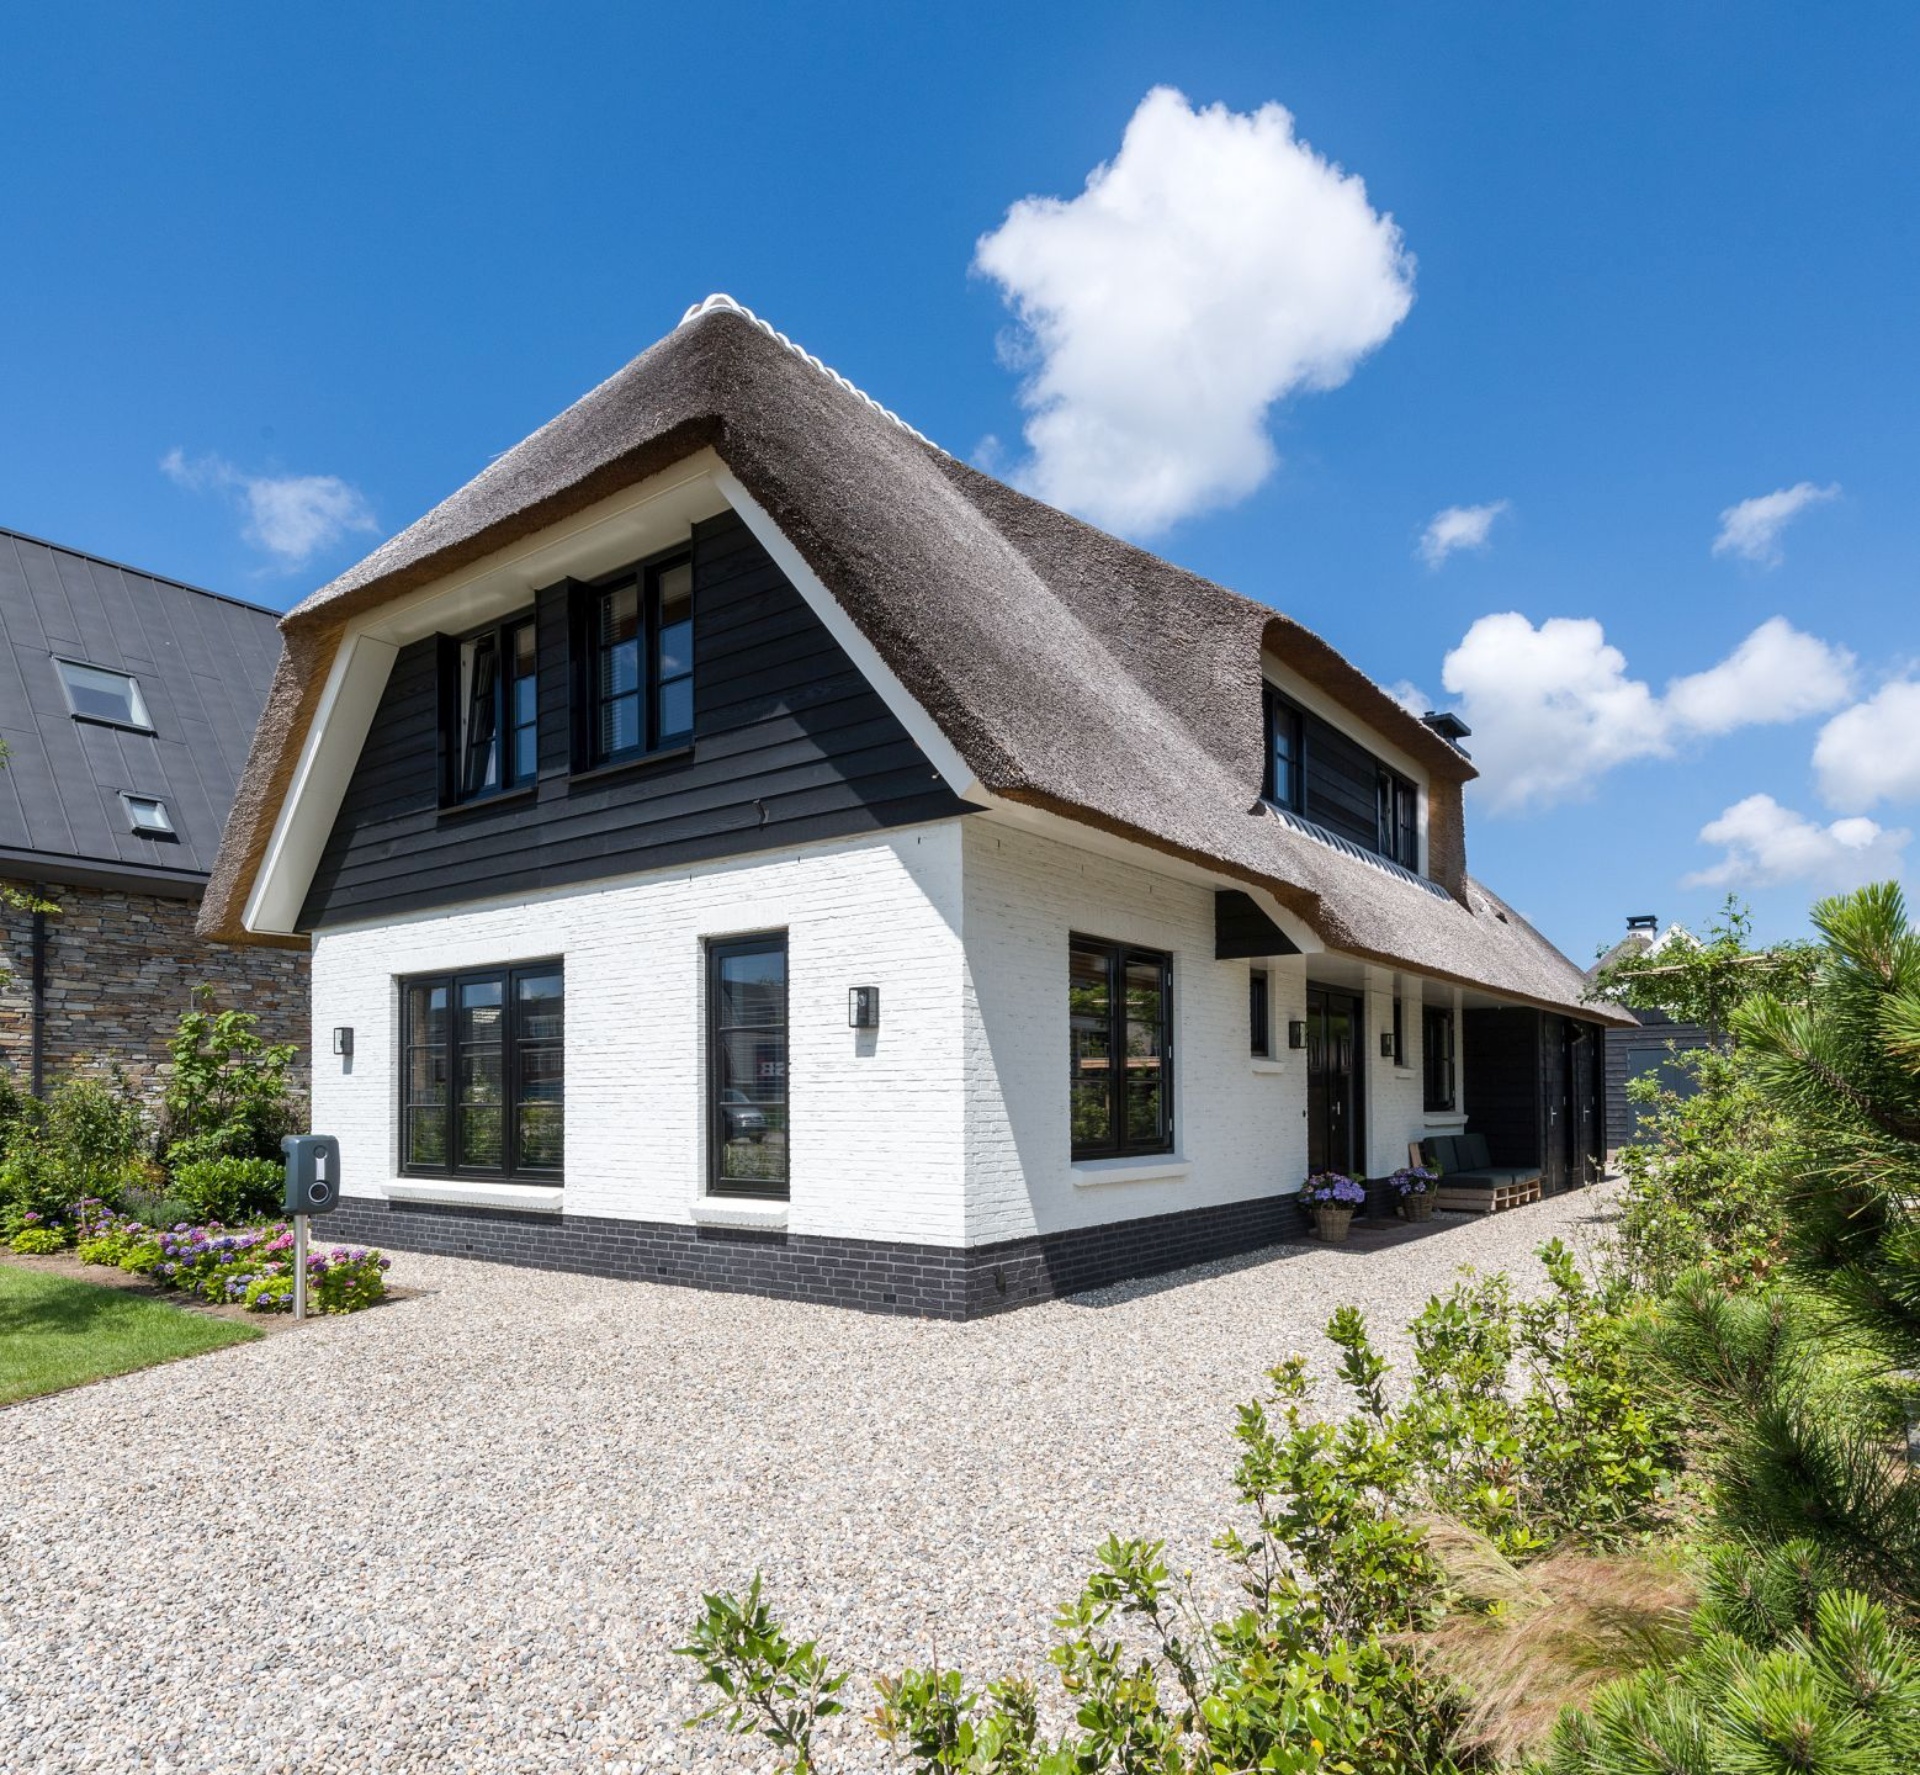 Compact gezinshuis Beverwijk | Atelier 3